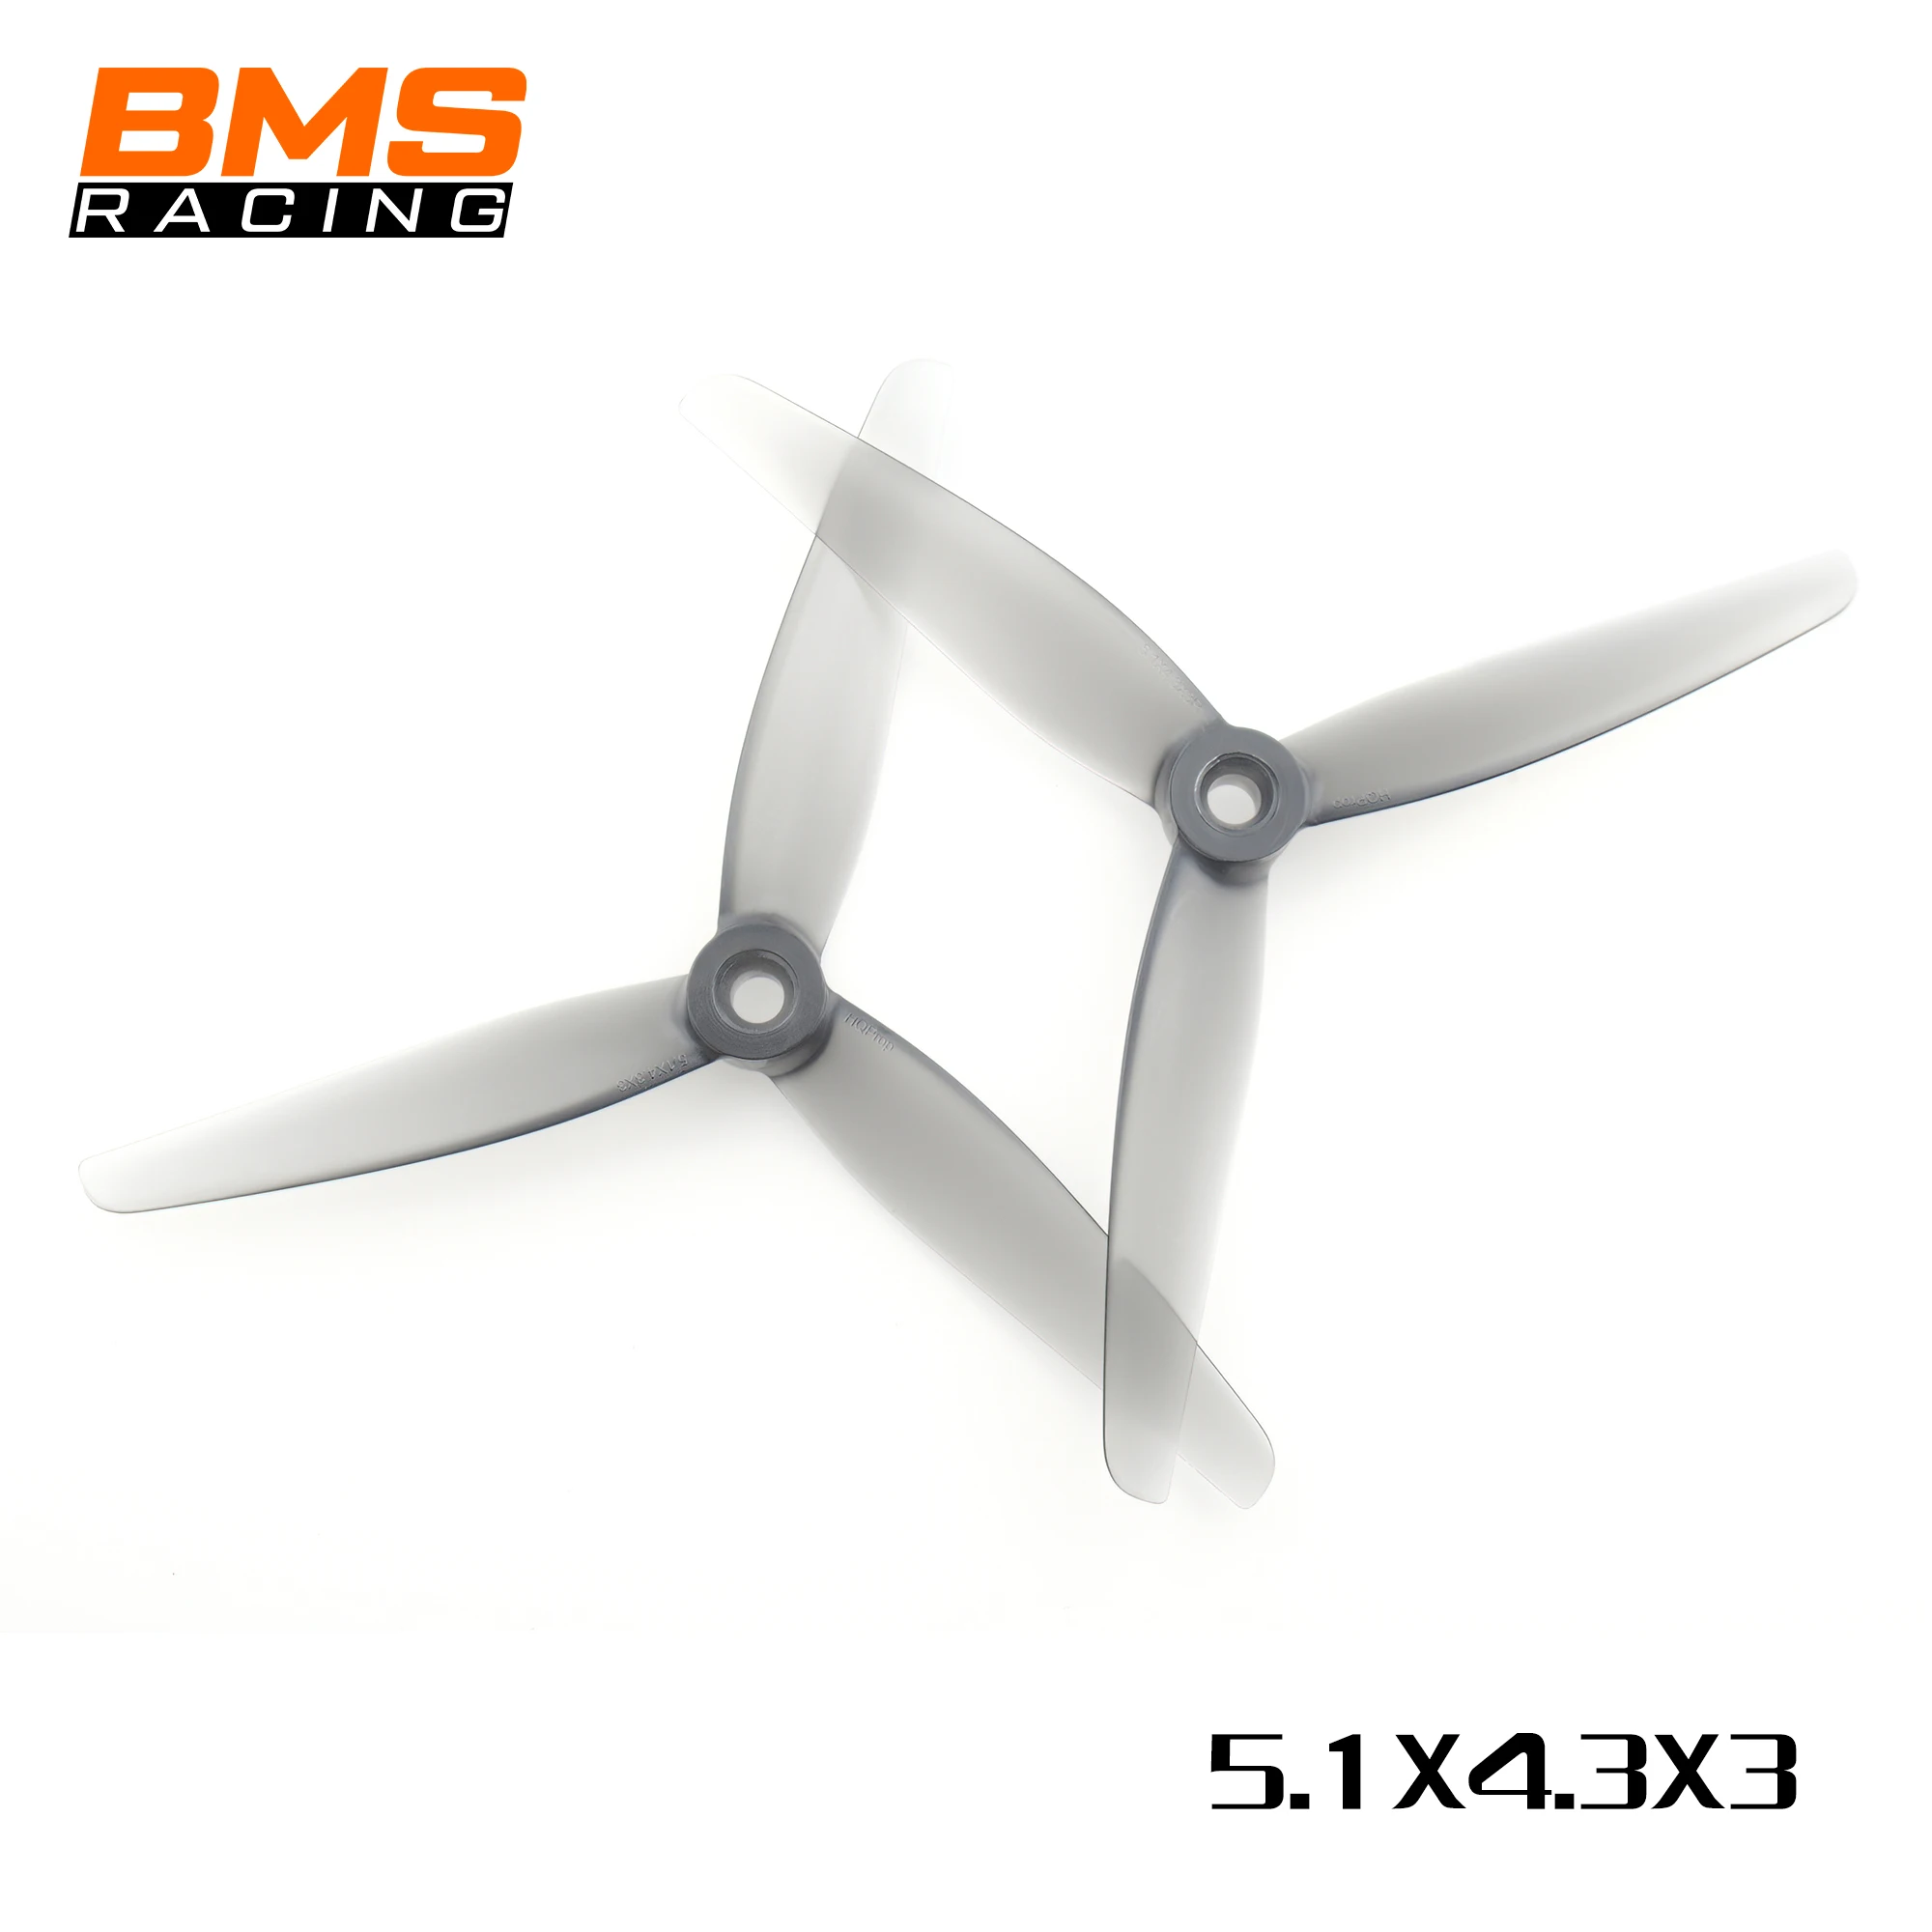 HQProp BMS Racing 5.1x4.3x3 propeller